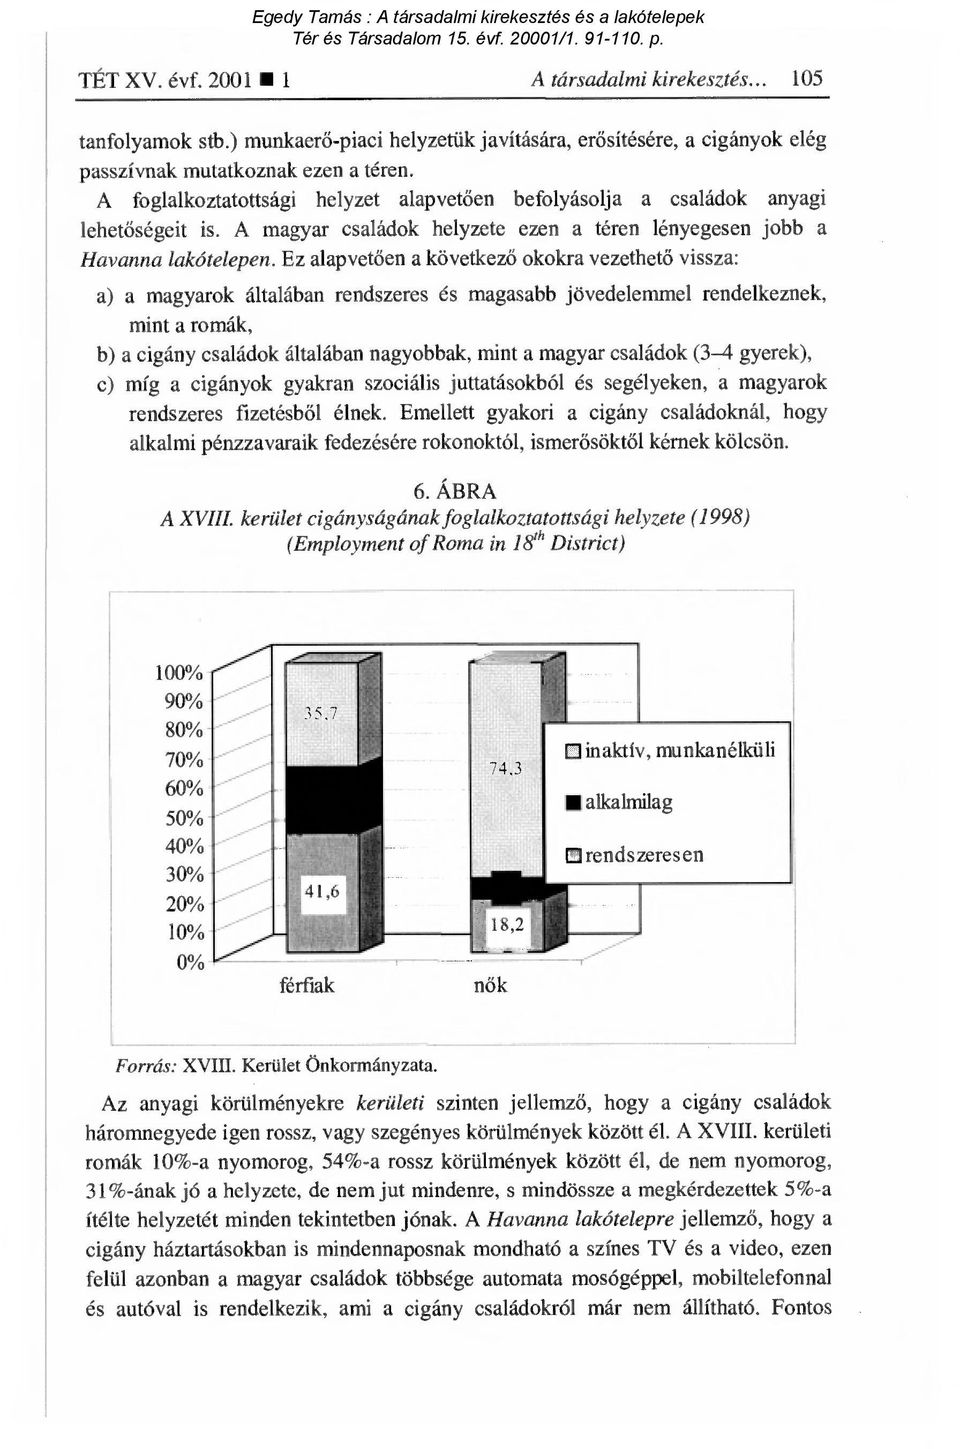 Ez alapvetően a következő okokra vezethető vissza: a) a magyarok általában rendszeres és magasabb jövedelemmel rendelkeznek, mint a romák, b) a cigány családok általában nagyobbak, mint a magyar